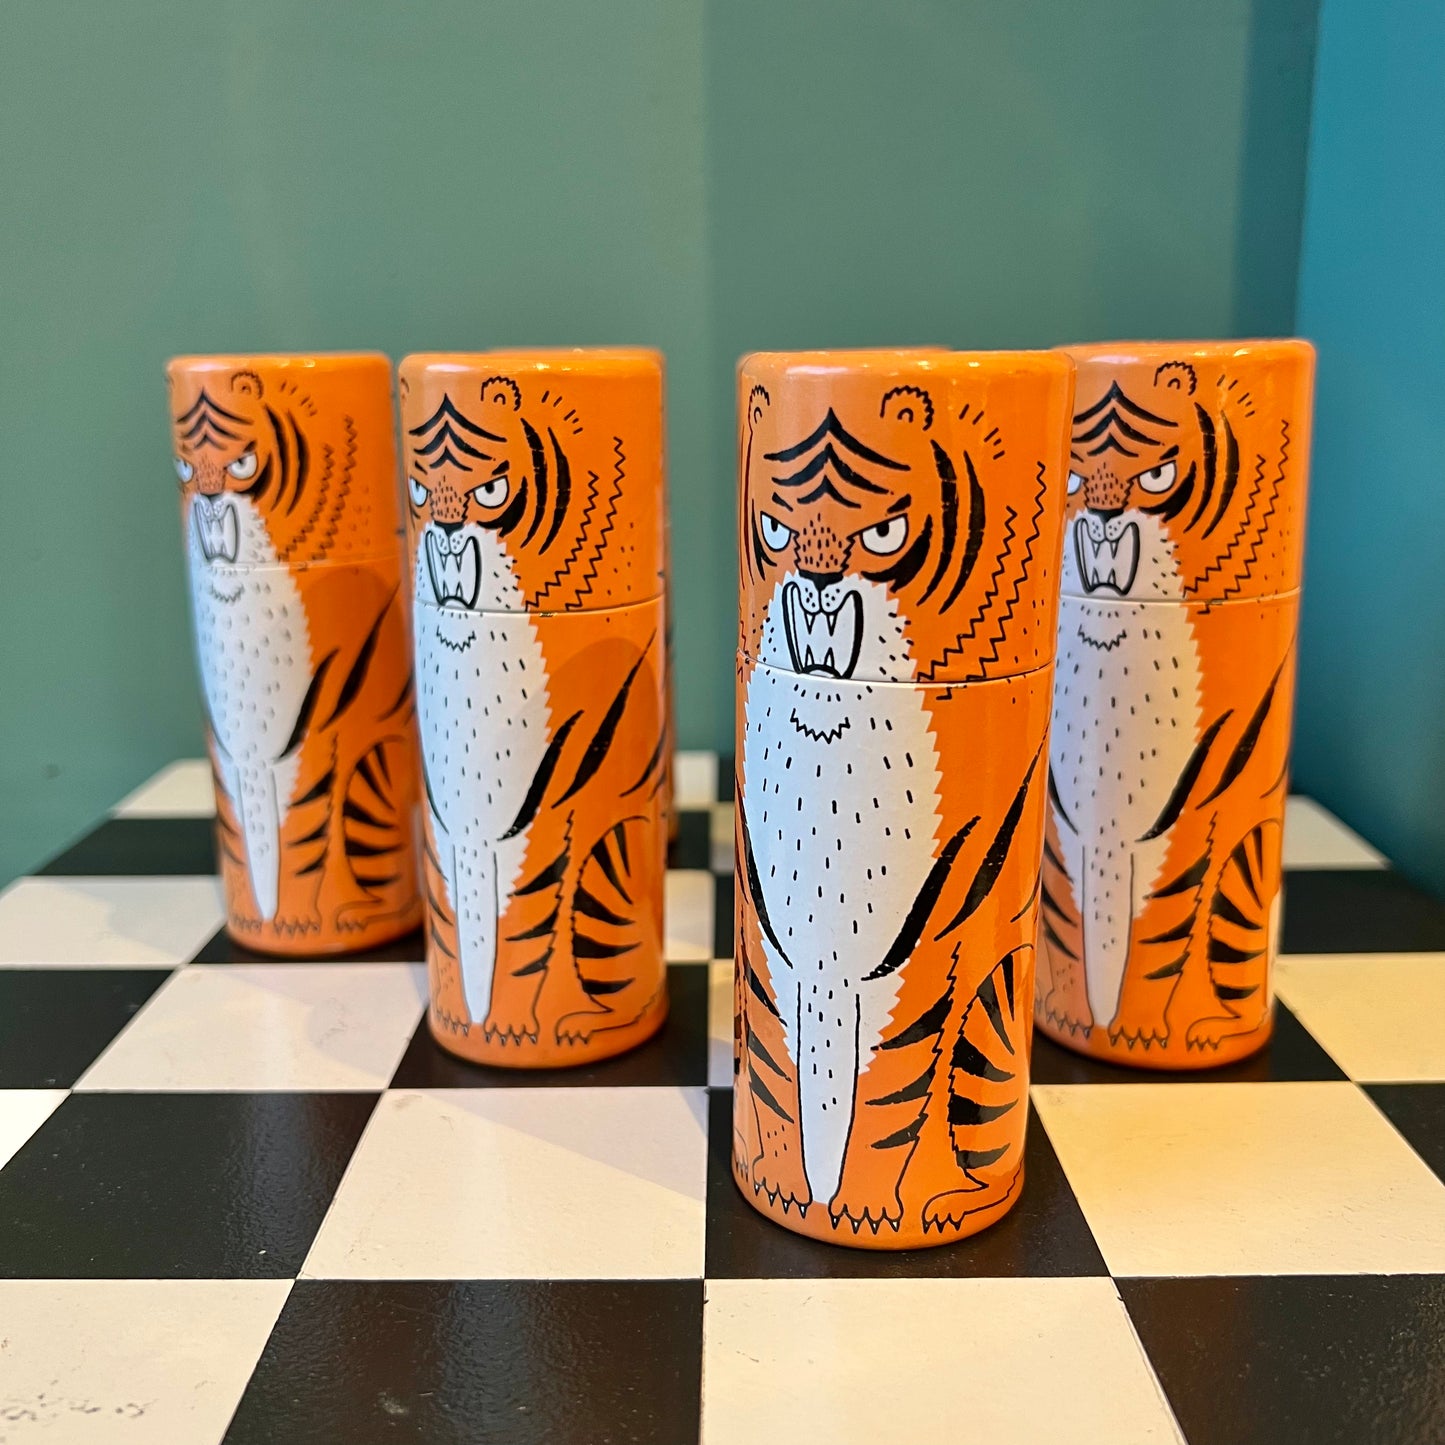 Tiger Match Cylinder Matches